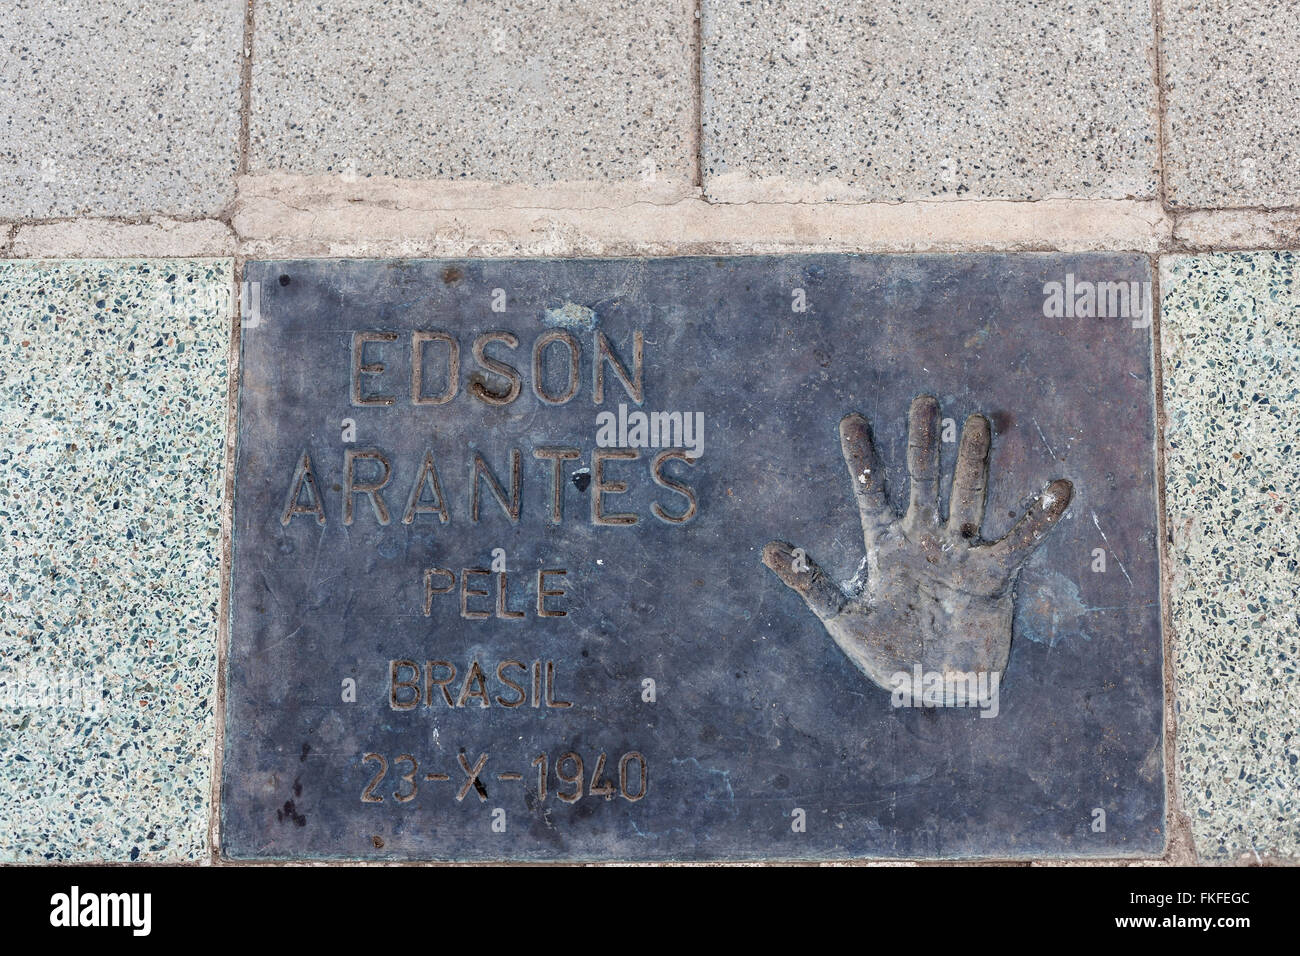 Imprimer part étage d'Edson Arantes Pelé dans Plaza dels Campions, Parc de la Nova Icària, Vila Olimpica, Barcelone. Banque D'Images